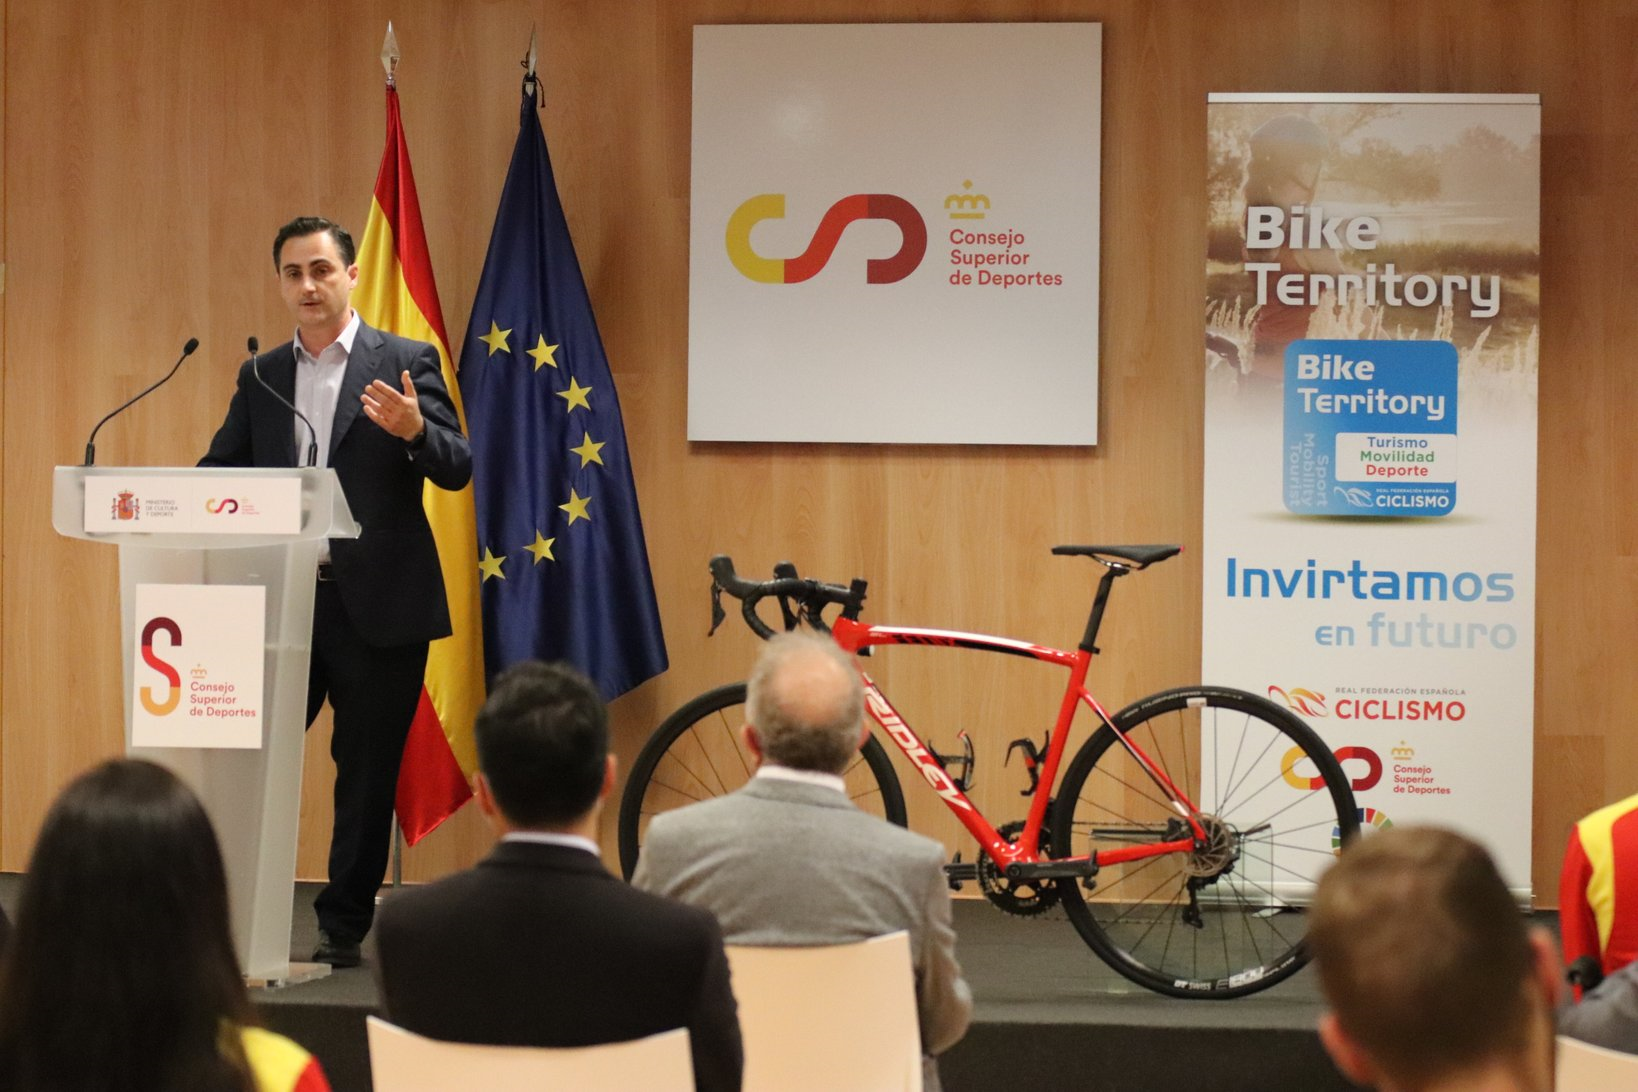 La RFEC presenta en el Consejo Superior de Deportes su proyecto Bike Territory